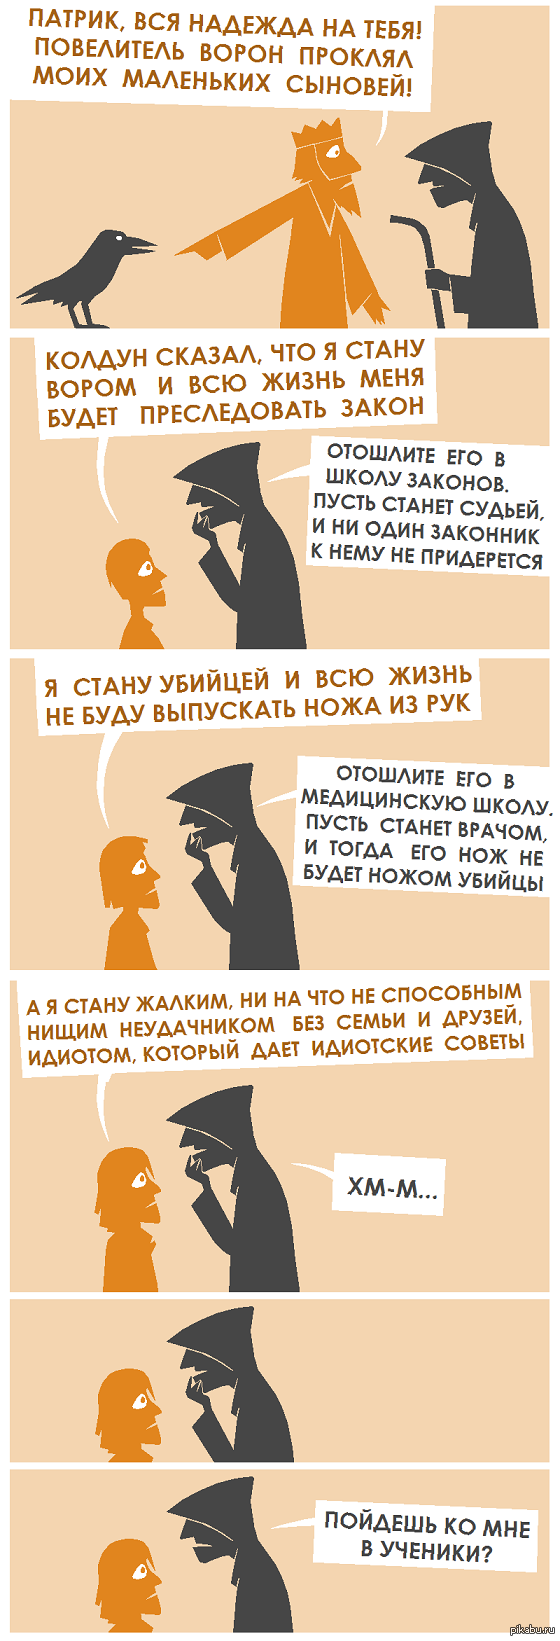 http://cs4.pikabu.ru/post_img/2015/10/30/10/1446226390_1564841648.png